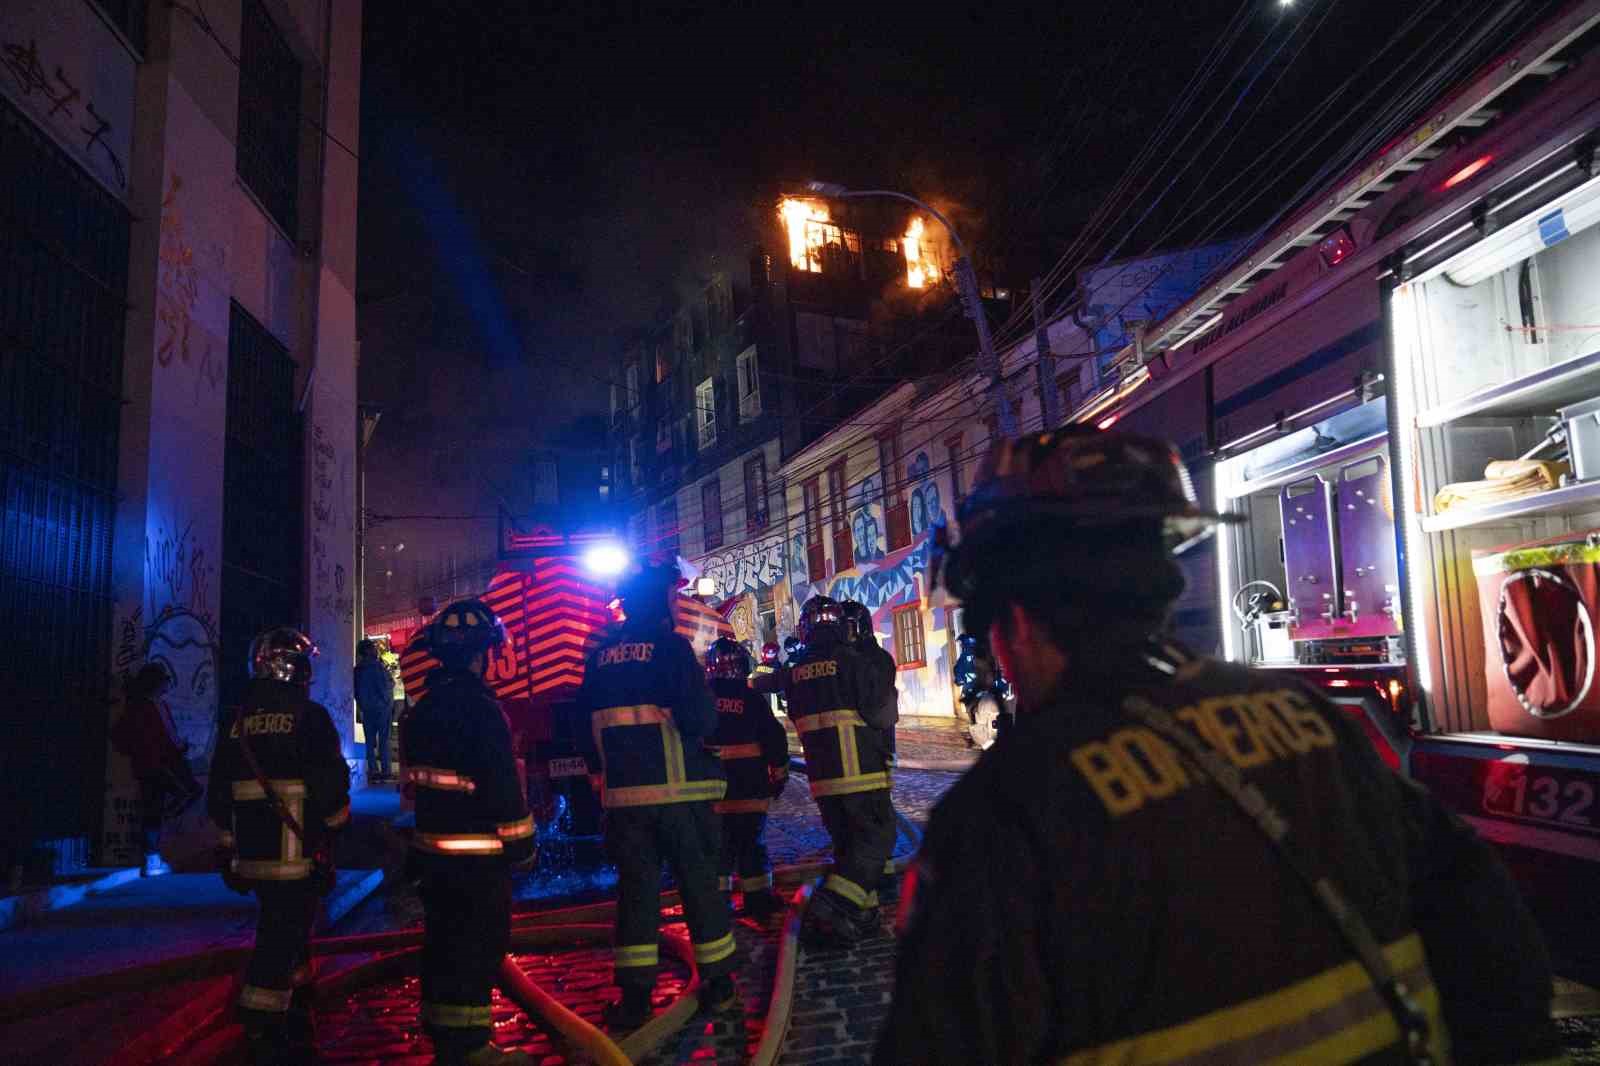 Şili’deki orman yangınında 2 kişi öldü, 20 ev kül oldu
